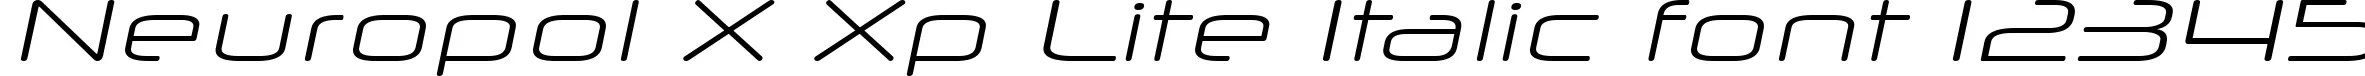 Dynamic Neuropol X Xp Lite Italic Font Preview https://safirsoft.com